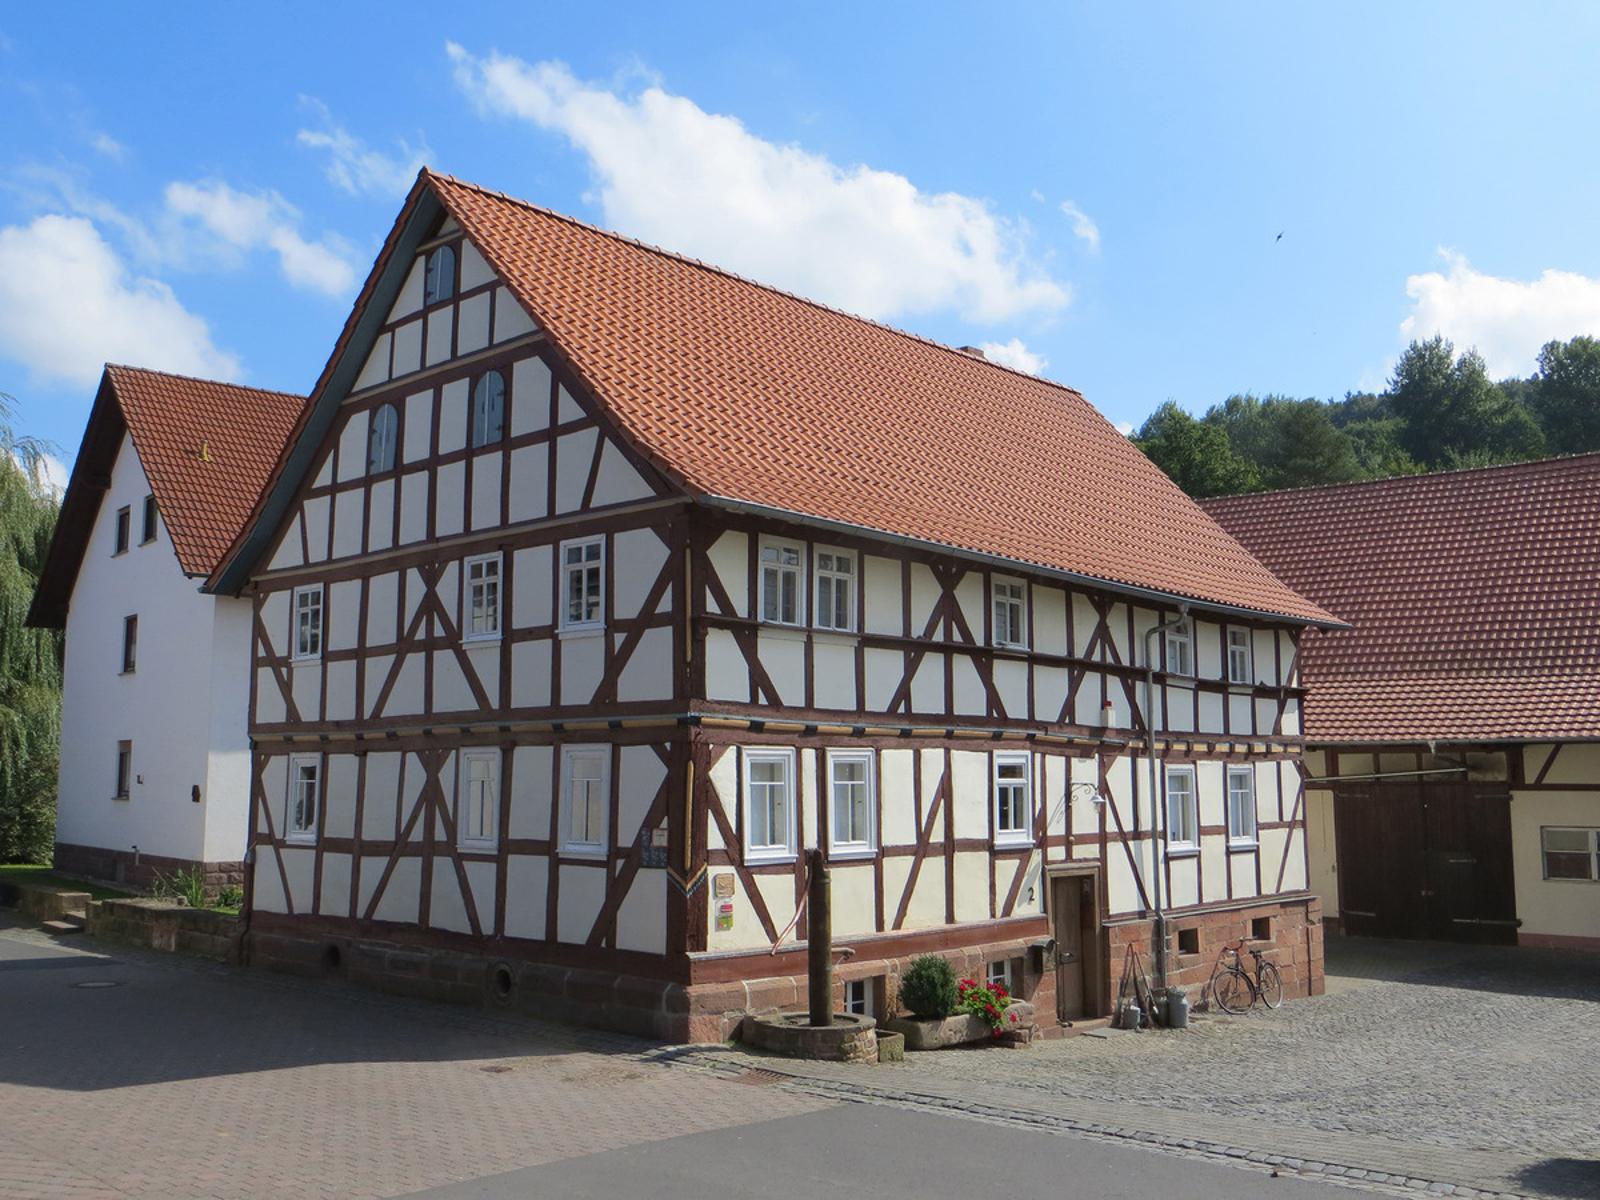 Das Dorfmuseum Buisch ahl Huss in Schlitz lernt man die Geschichte und Kultur des Dorfes kennen. Es ist ein kleines, charmantes Museum und befindet sich in einem historischen Fachwerkhaus. Das Museum bietet eine Vielzahl von alten Ausstellungsstücken, die das Leben und die Traditionen der Mens...